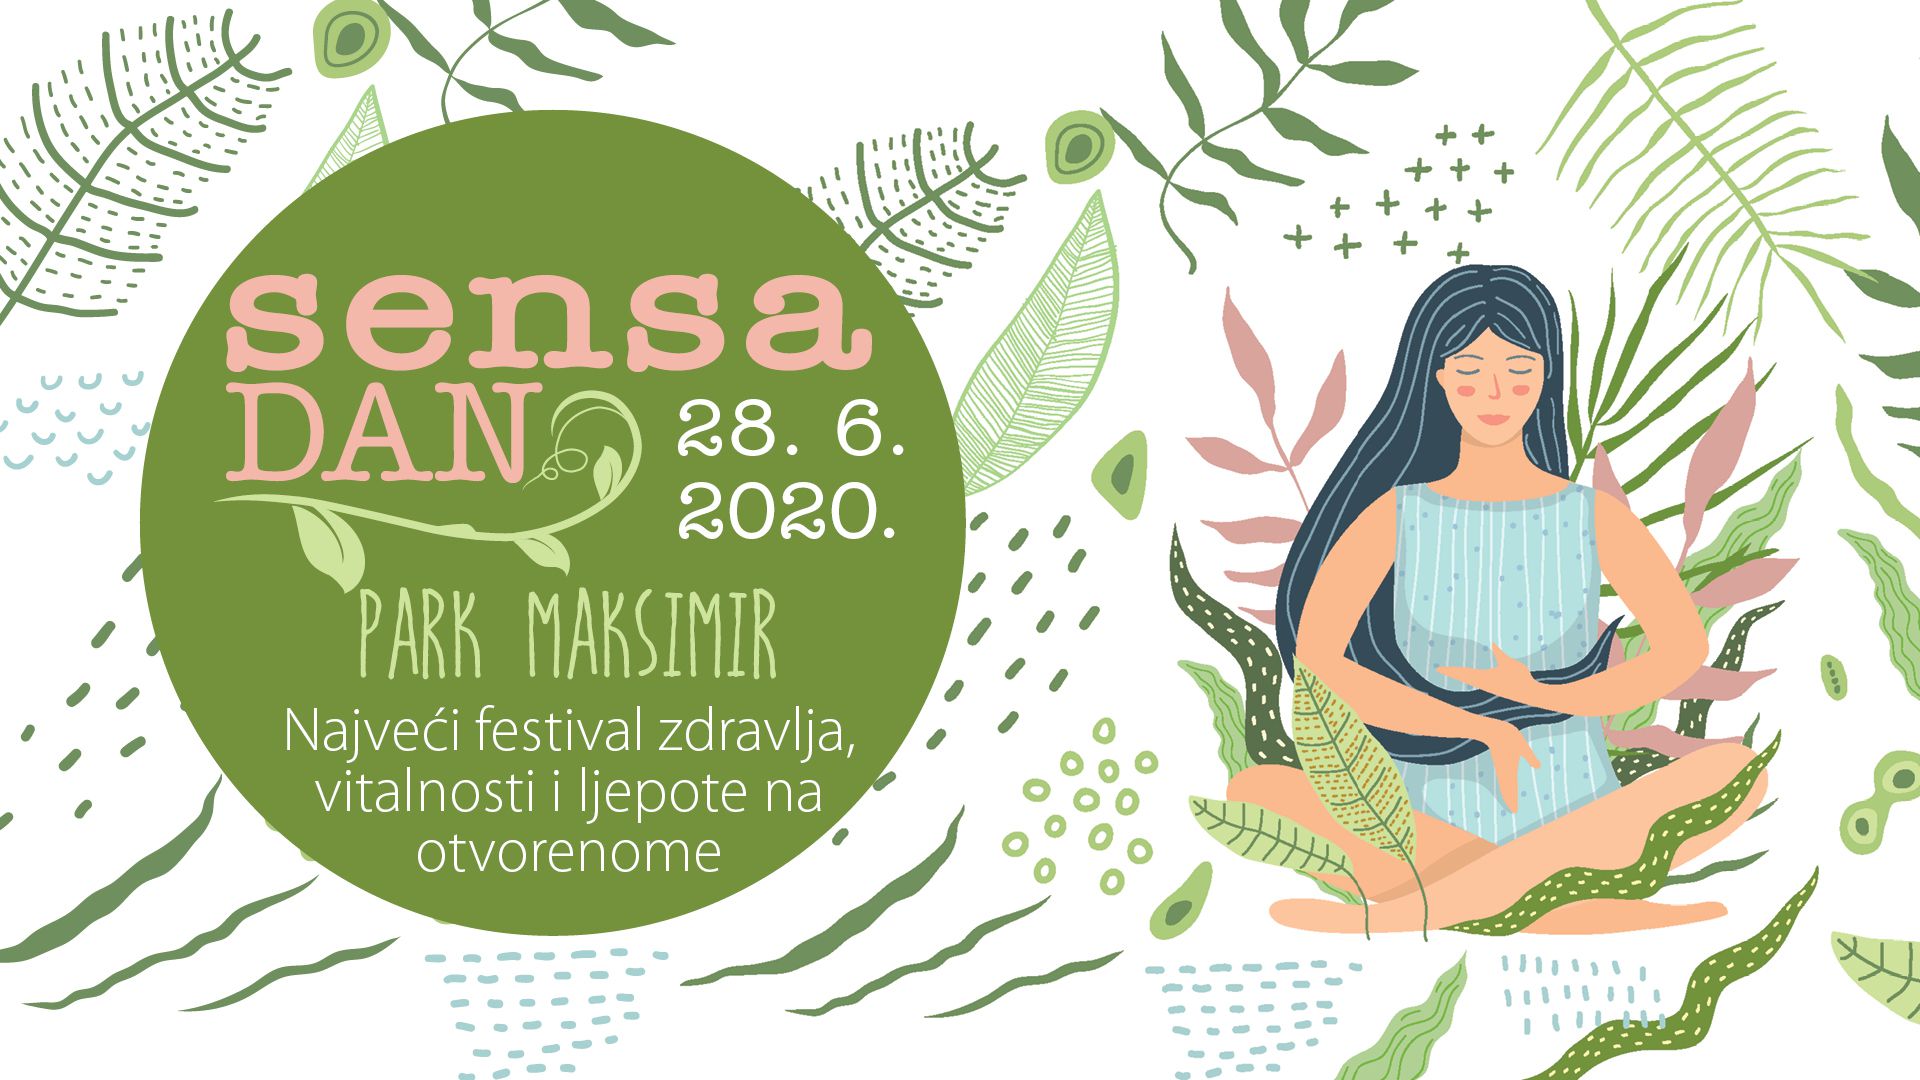 Dođite na 10. Sensa dan u Maksimiru! Uživajte u festivalu zdravlja, vitalnosti i ljepote na otvorenome